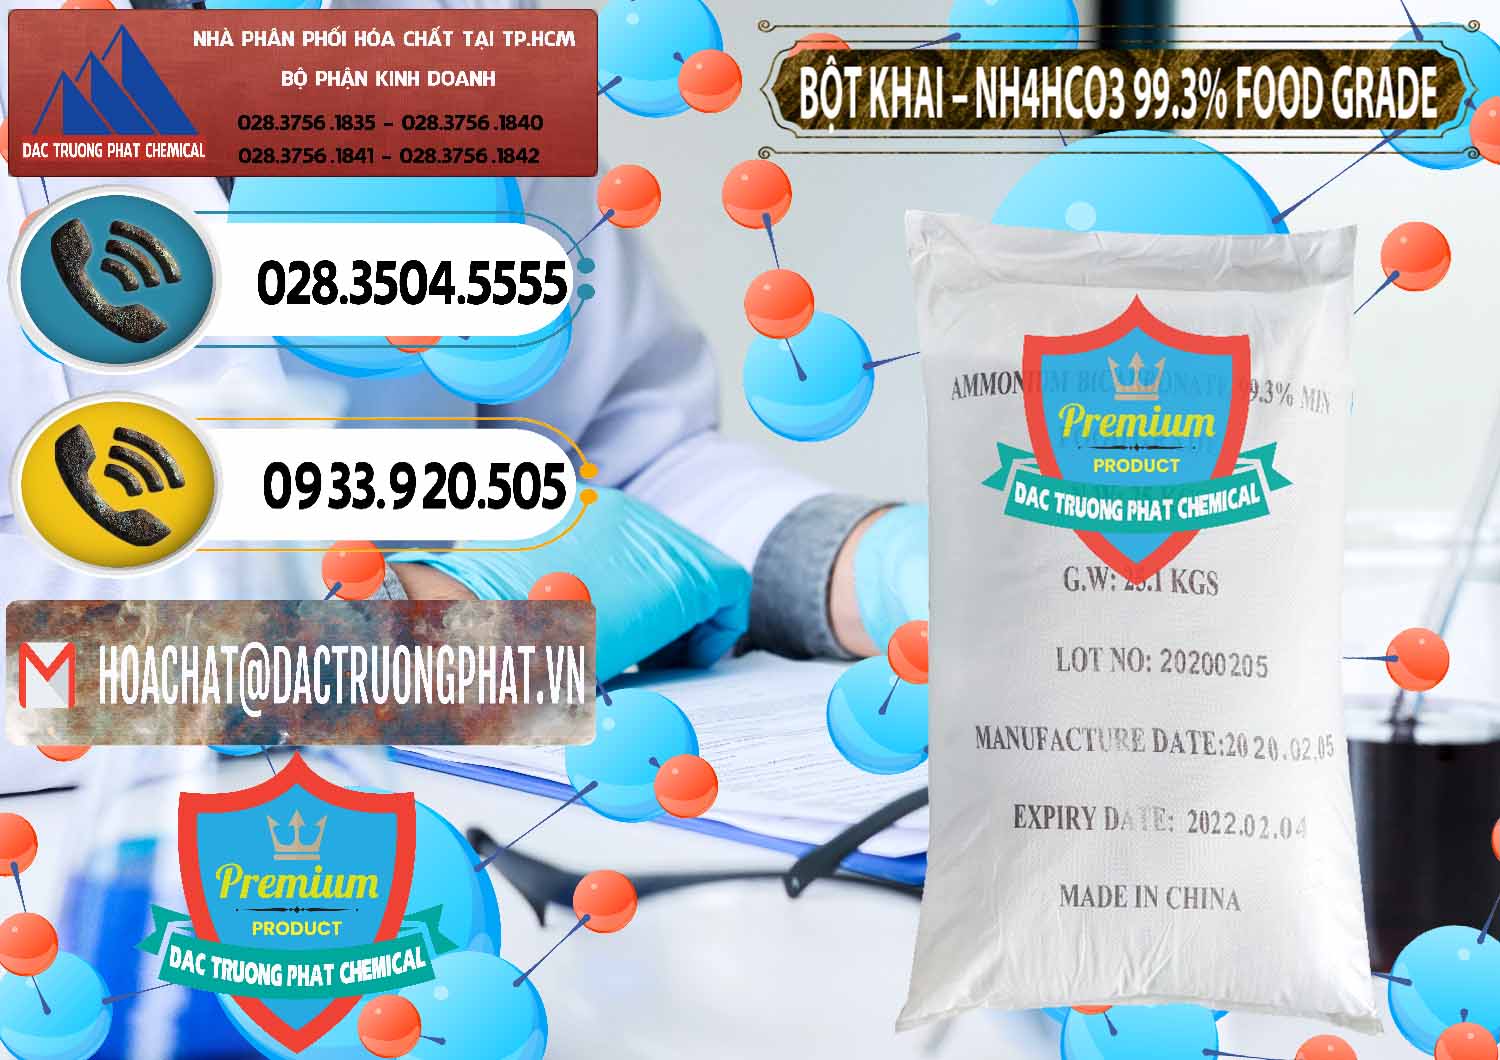 Đơn vị chuyên cung cấp ( bán ) Ammonium Bicarbonate – Bột Khai NH4HCO3 Food Grade Trung Quốc China - 0019 - Đơn vị chuyên cung cấp & nhập khẩu hóa chất tại TP.HCM - hoachatdetnhuom.vn